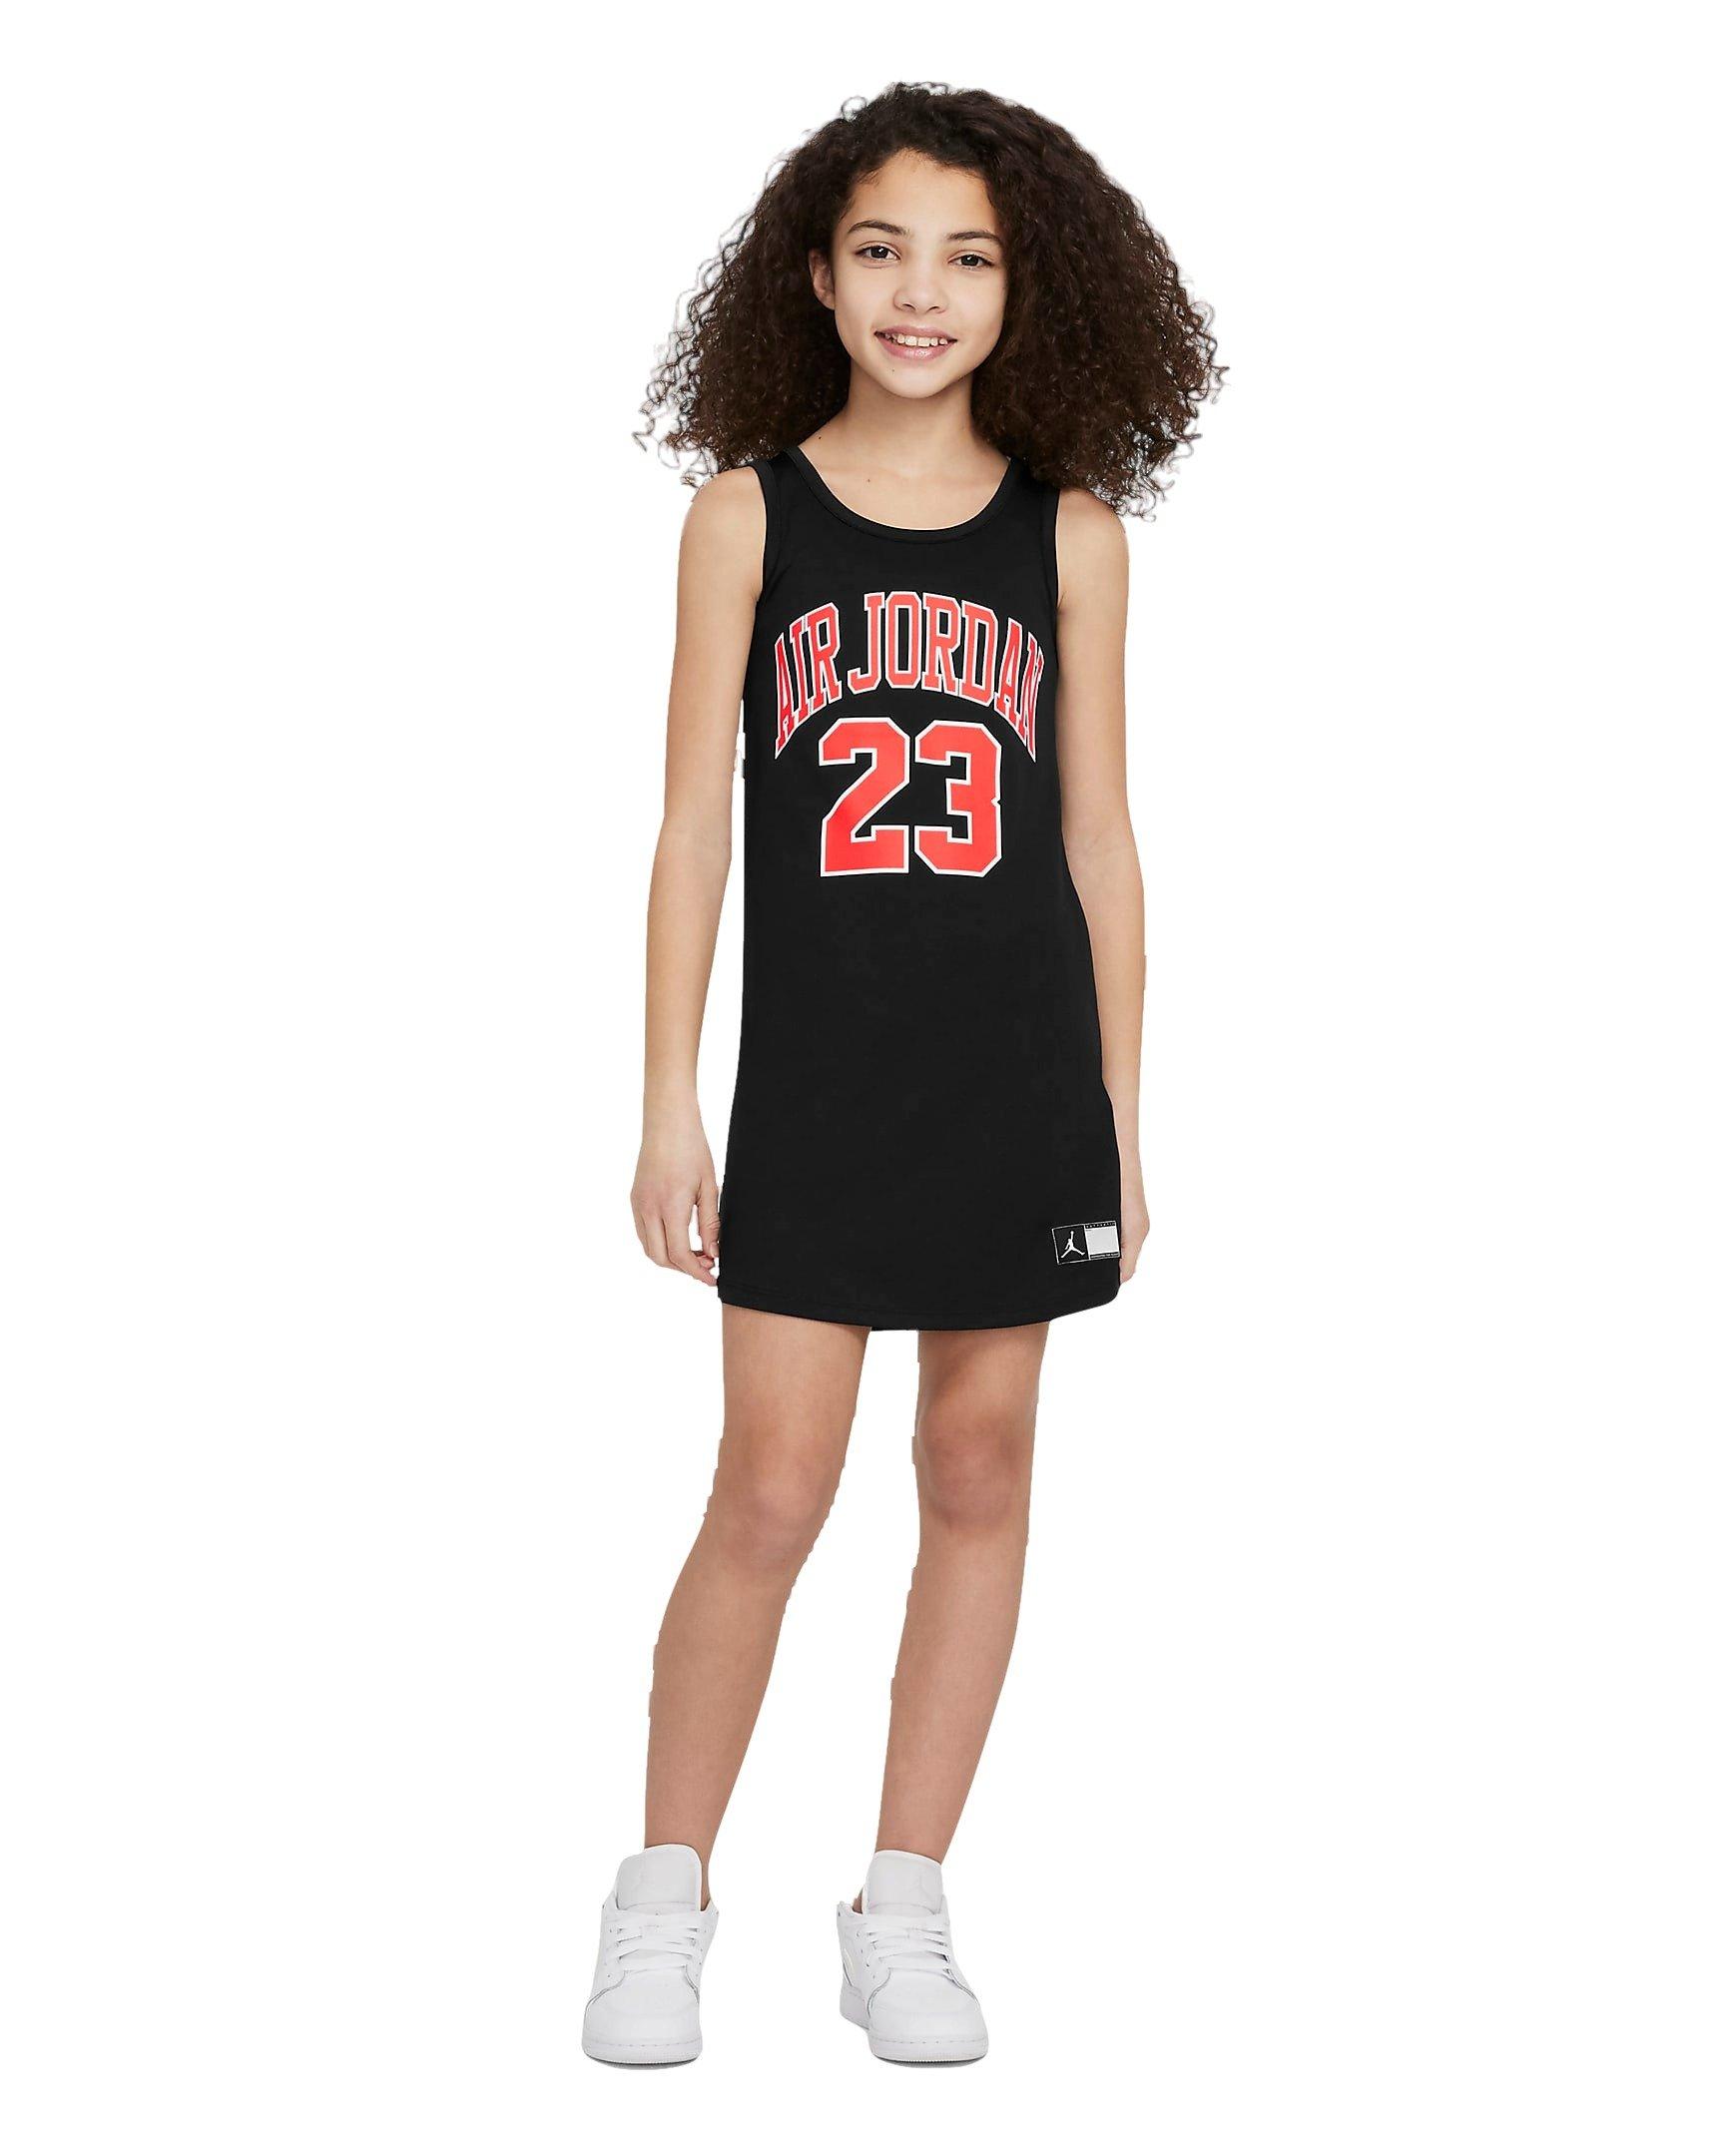 Basketball Jersey Dress for Women 